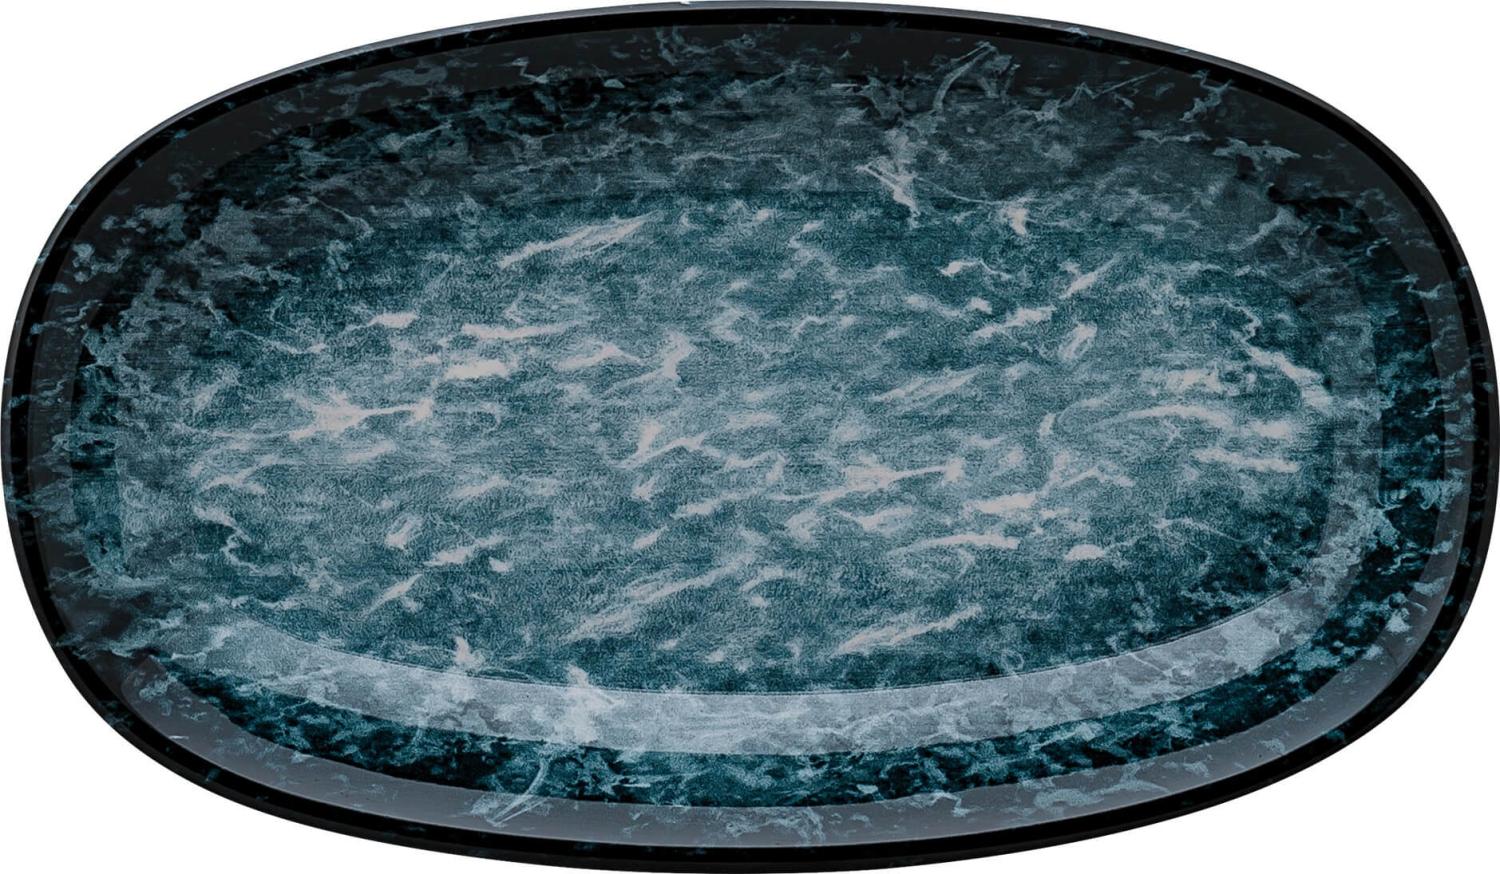 6x Servierplatten Speiseteller Porzellan Geschirr oval Blau Weiß Schwarz Bonna Sepia Gourmet 24x14cm Kantenschutz Bild 1